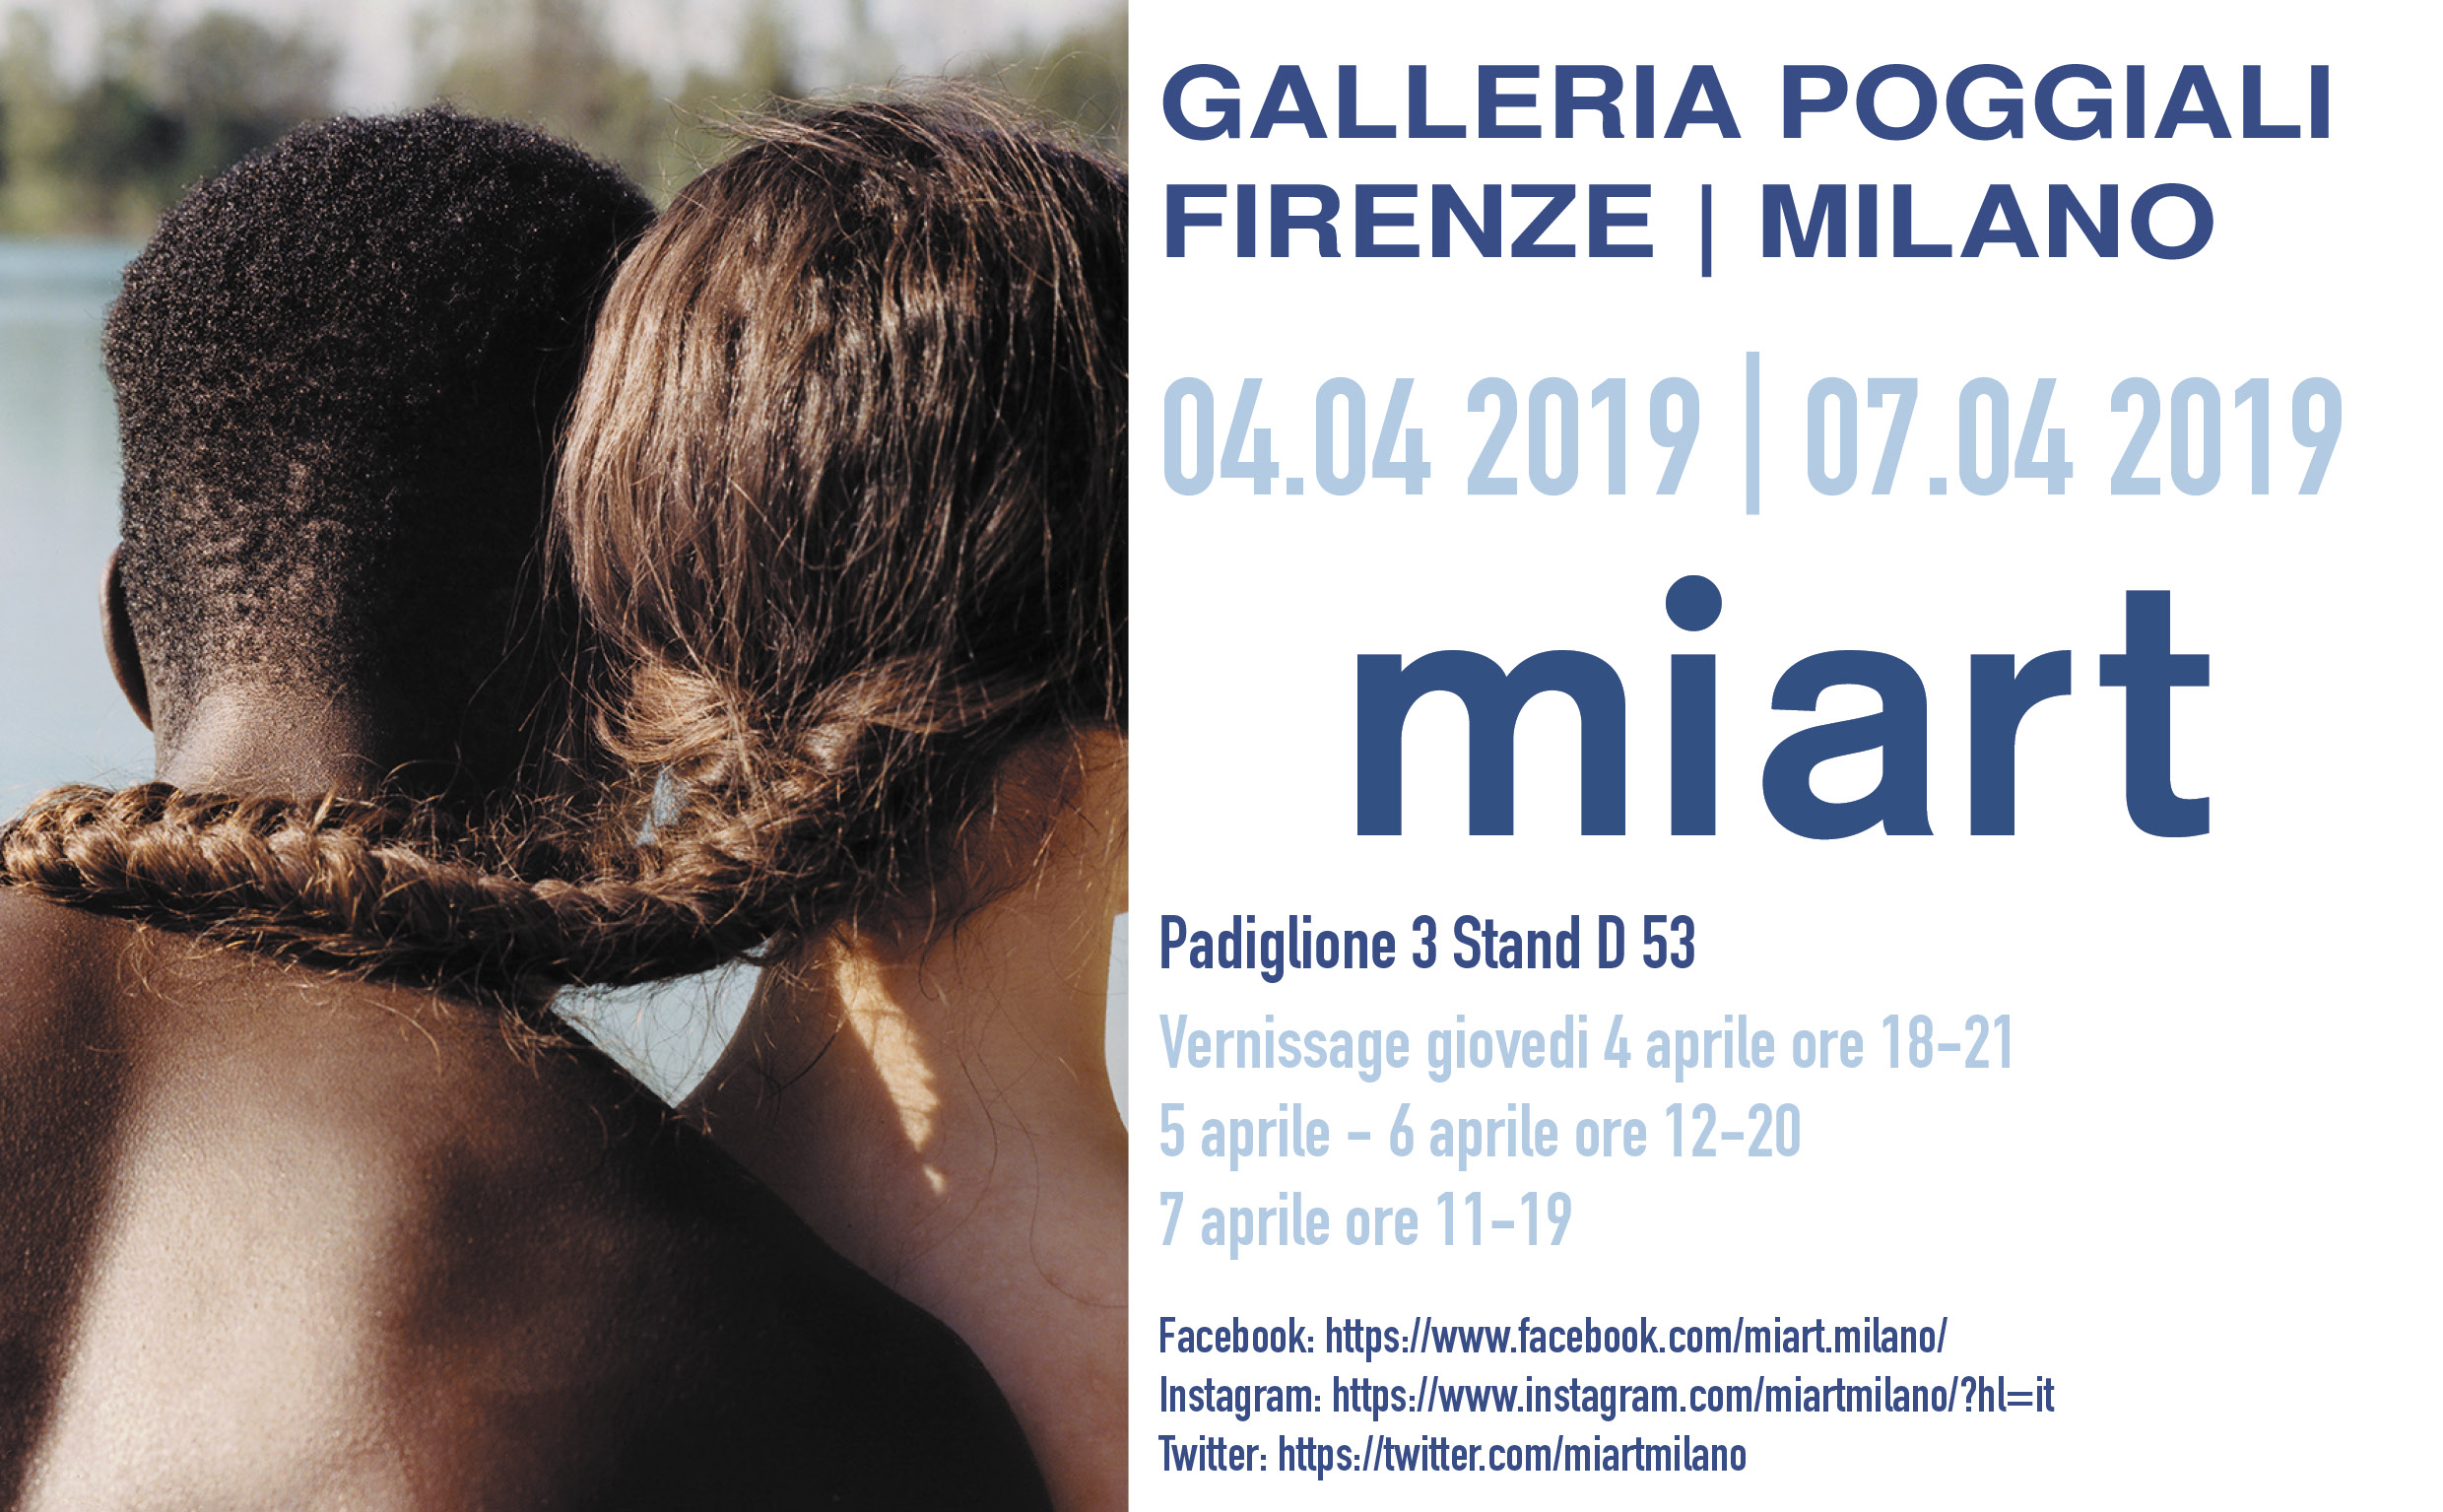 MiArt Milano 04.04 | 07.04. 2019